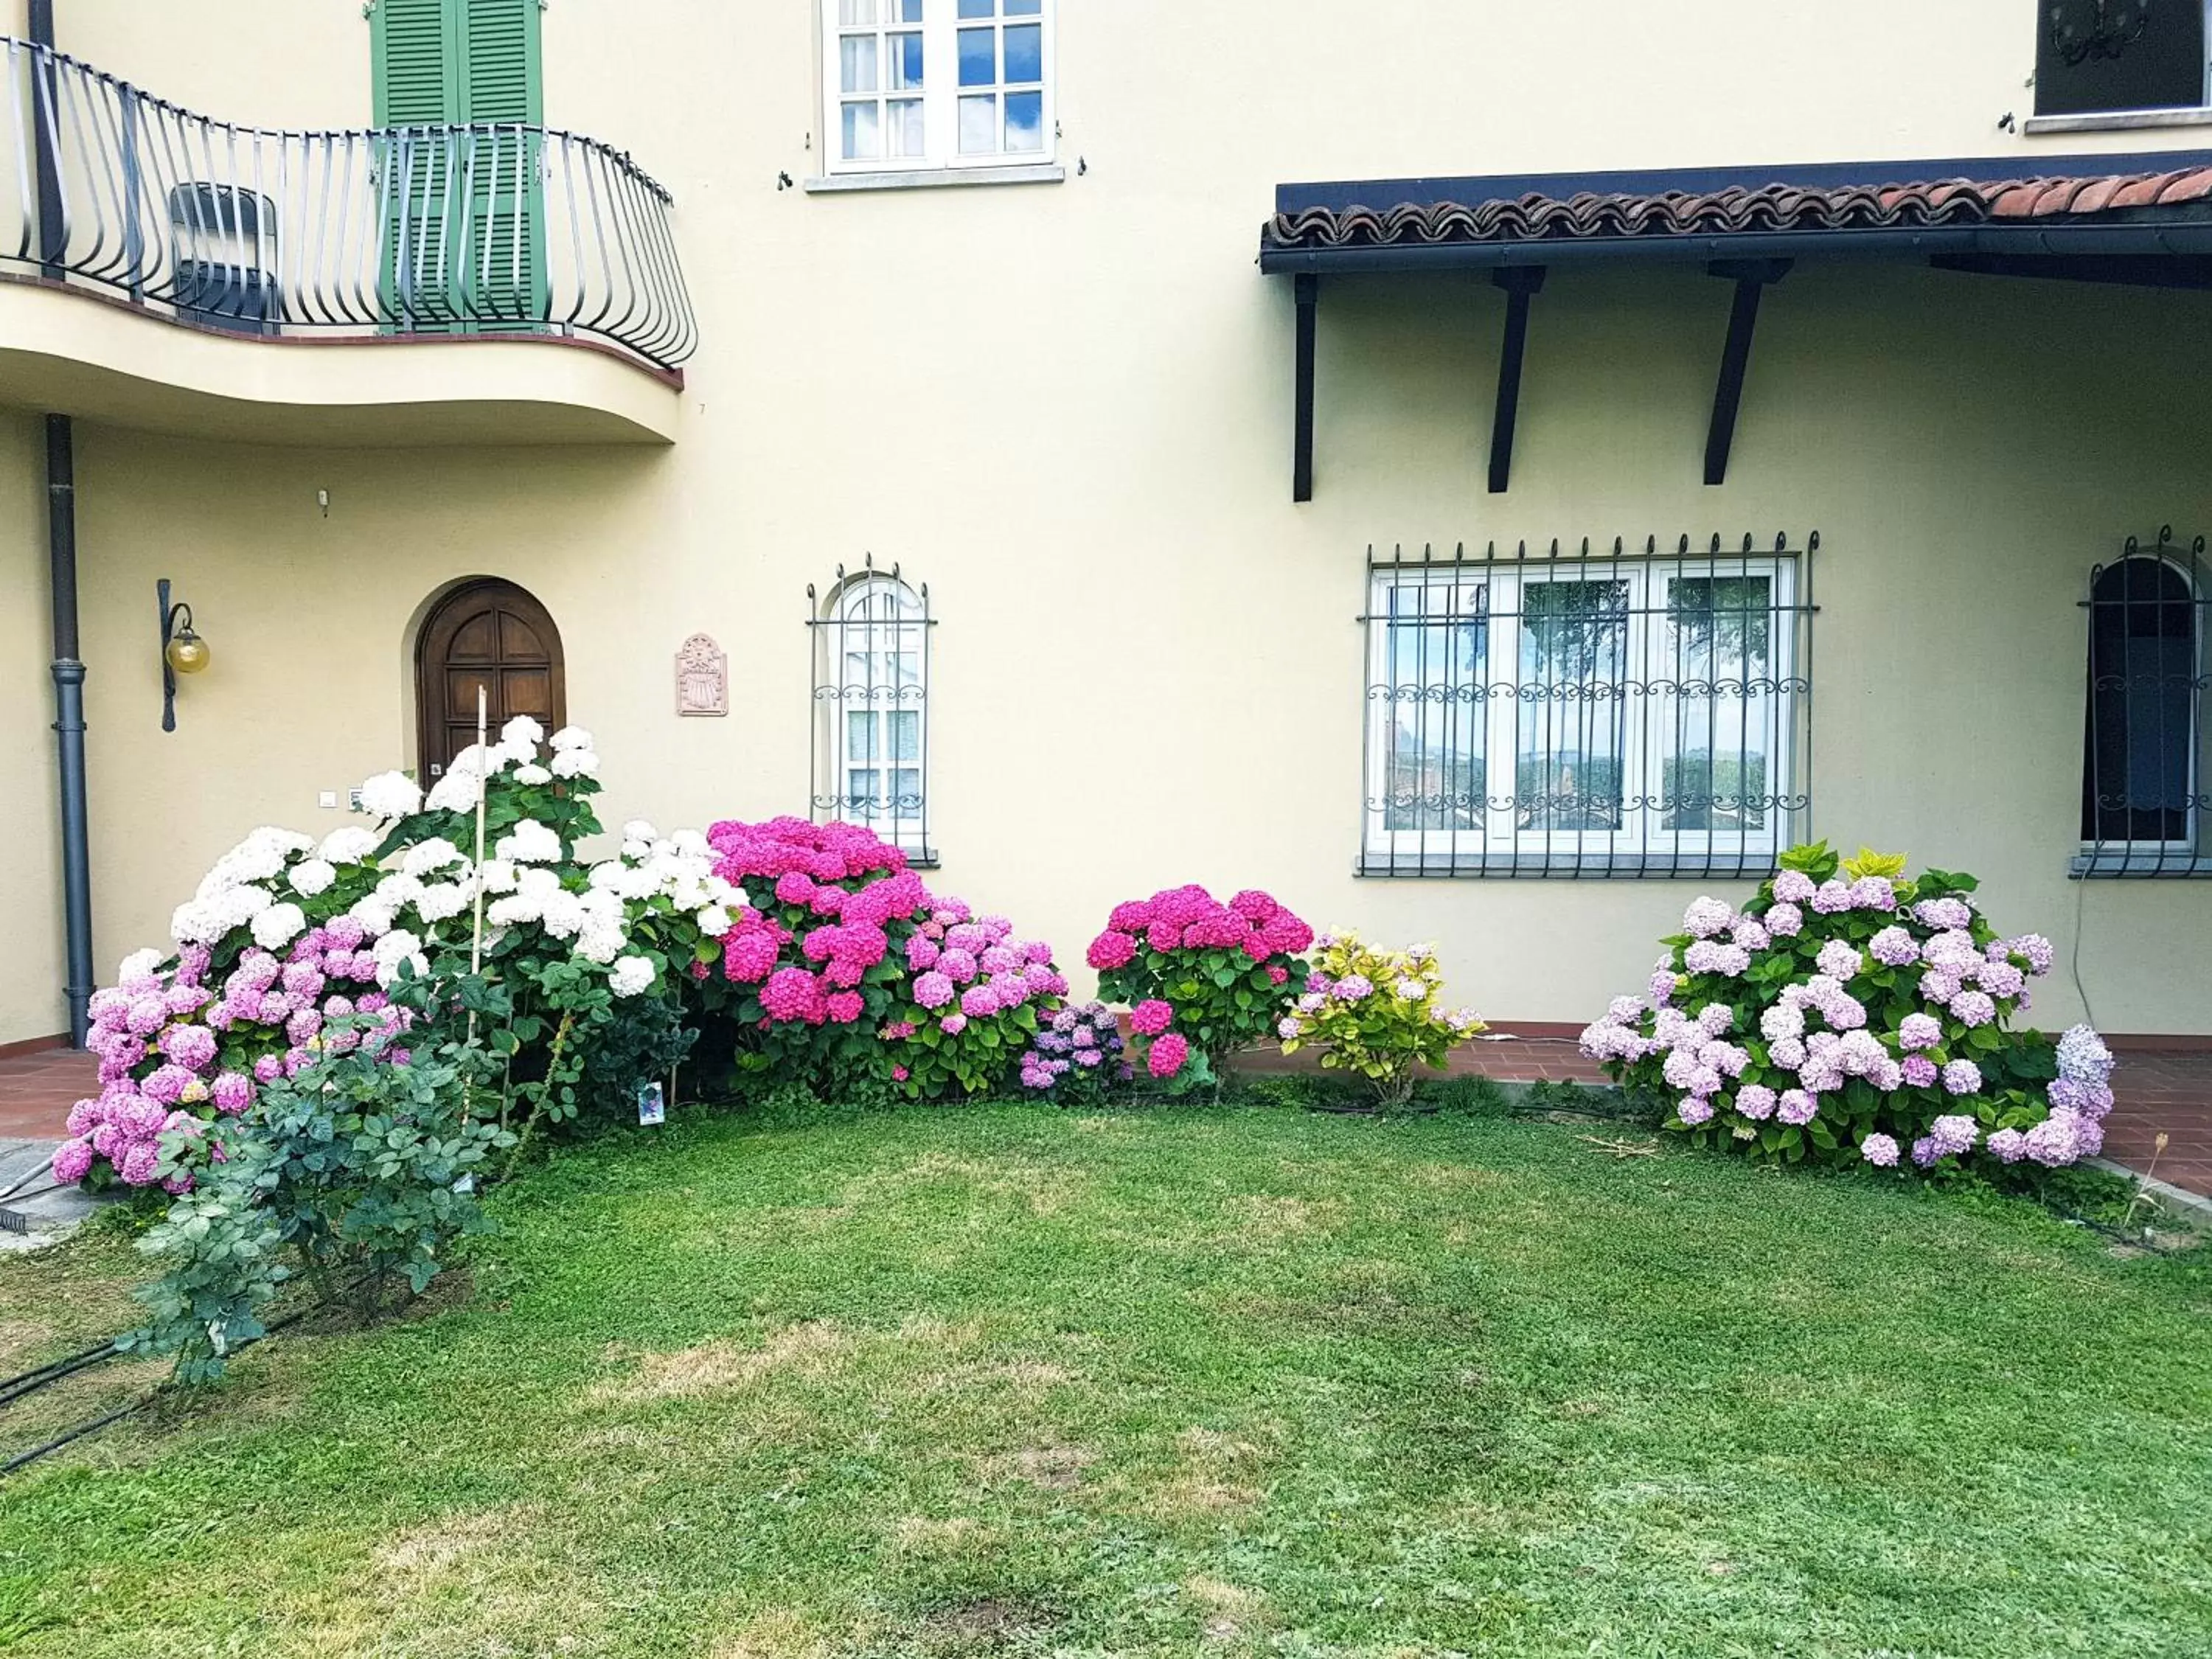 Garden view, Property Building in Villa Bellavista Alba, B&B